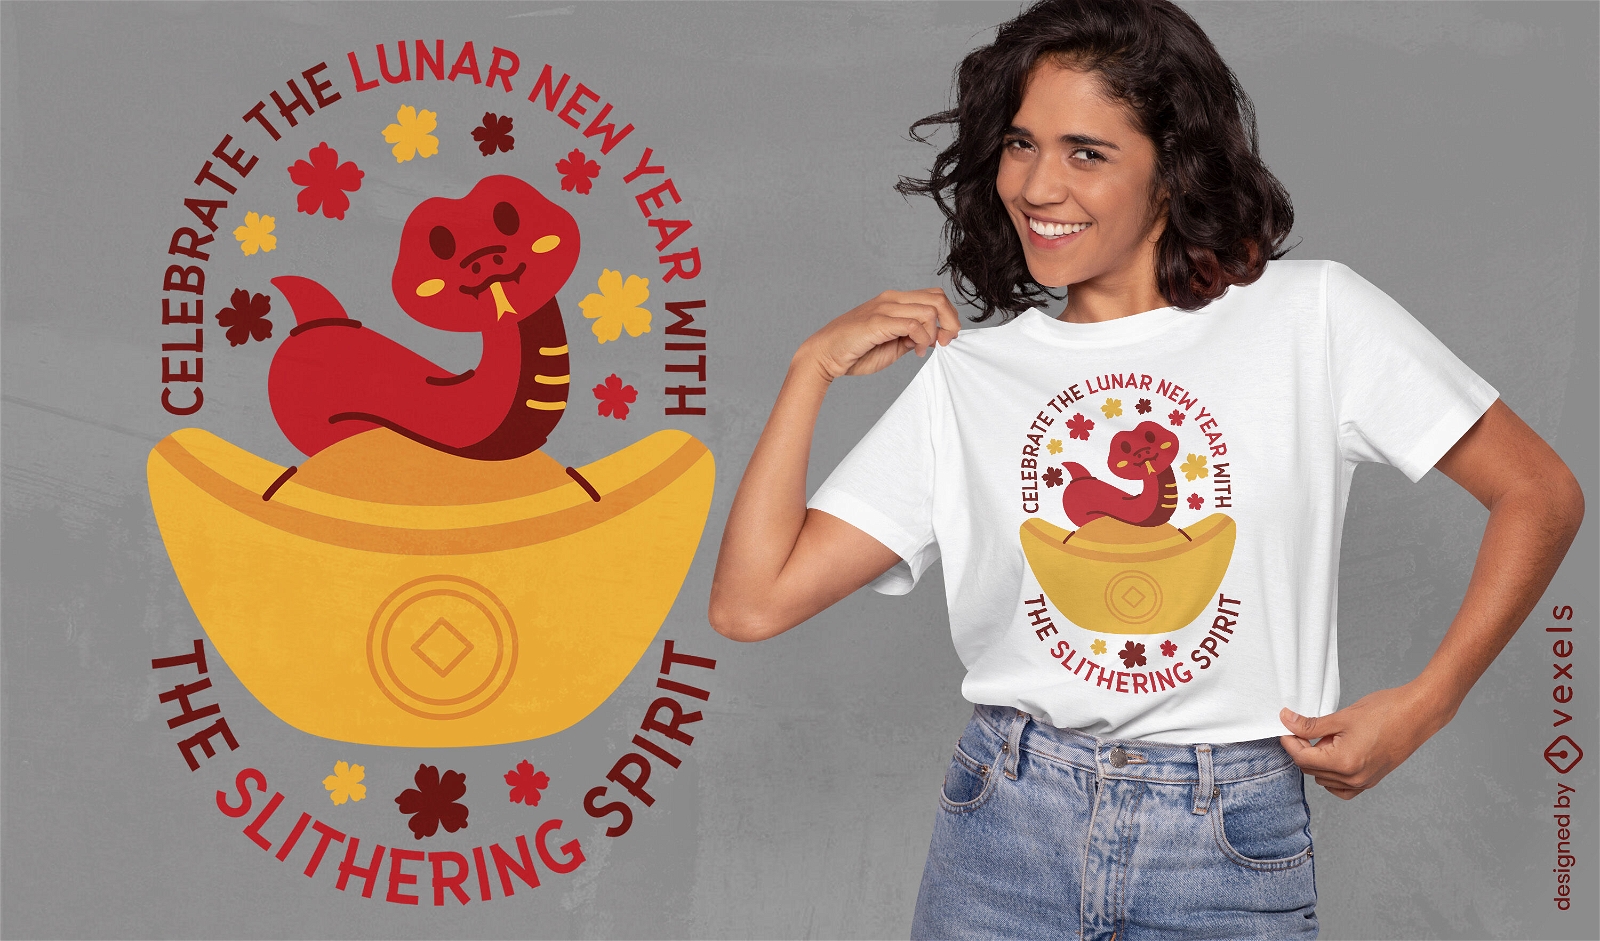 Lunar new year snake t-shirt design